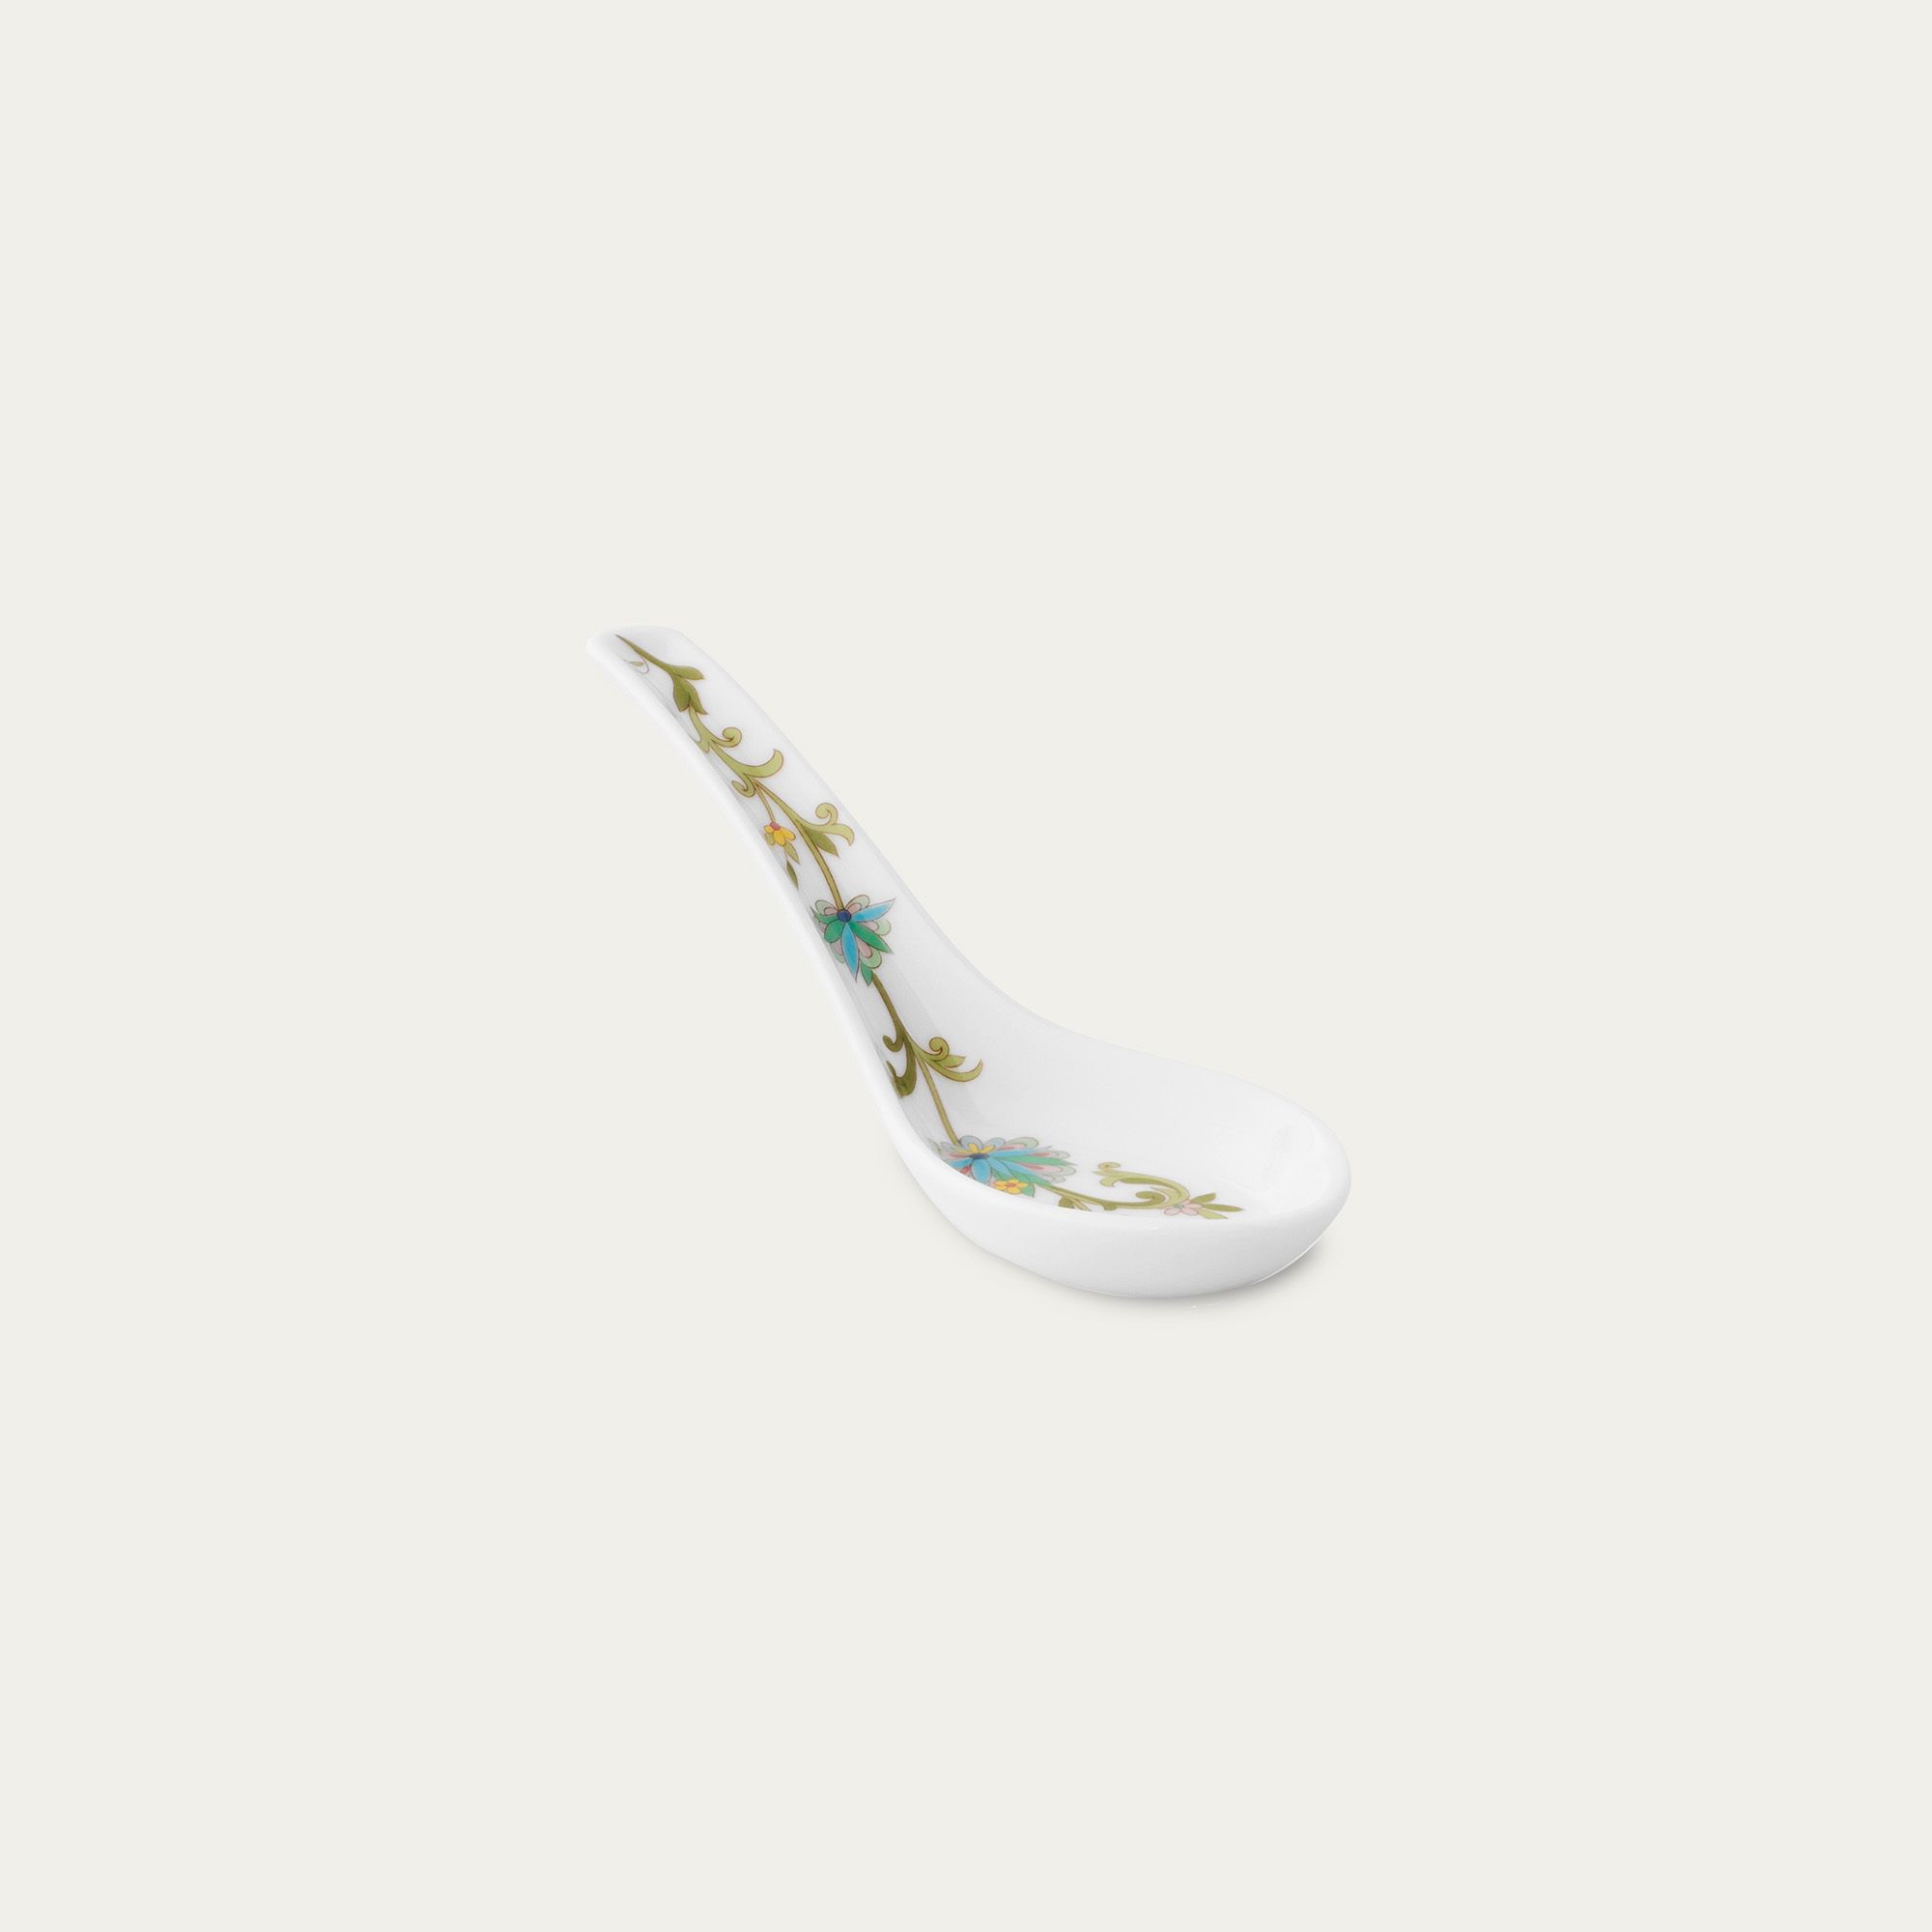  Thìa sứ (muỗng sứ) 13,3cm họa tiết hoa dây leo cao cấp | Yoshino 9983J-50130 